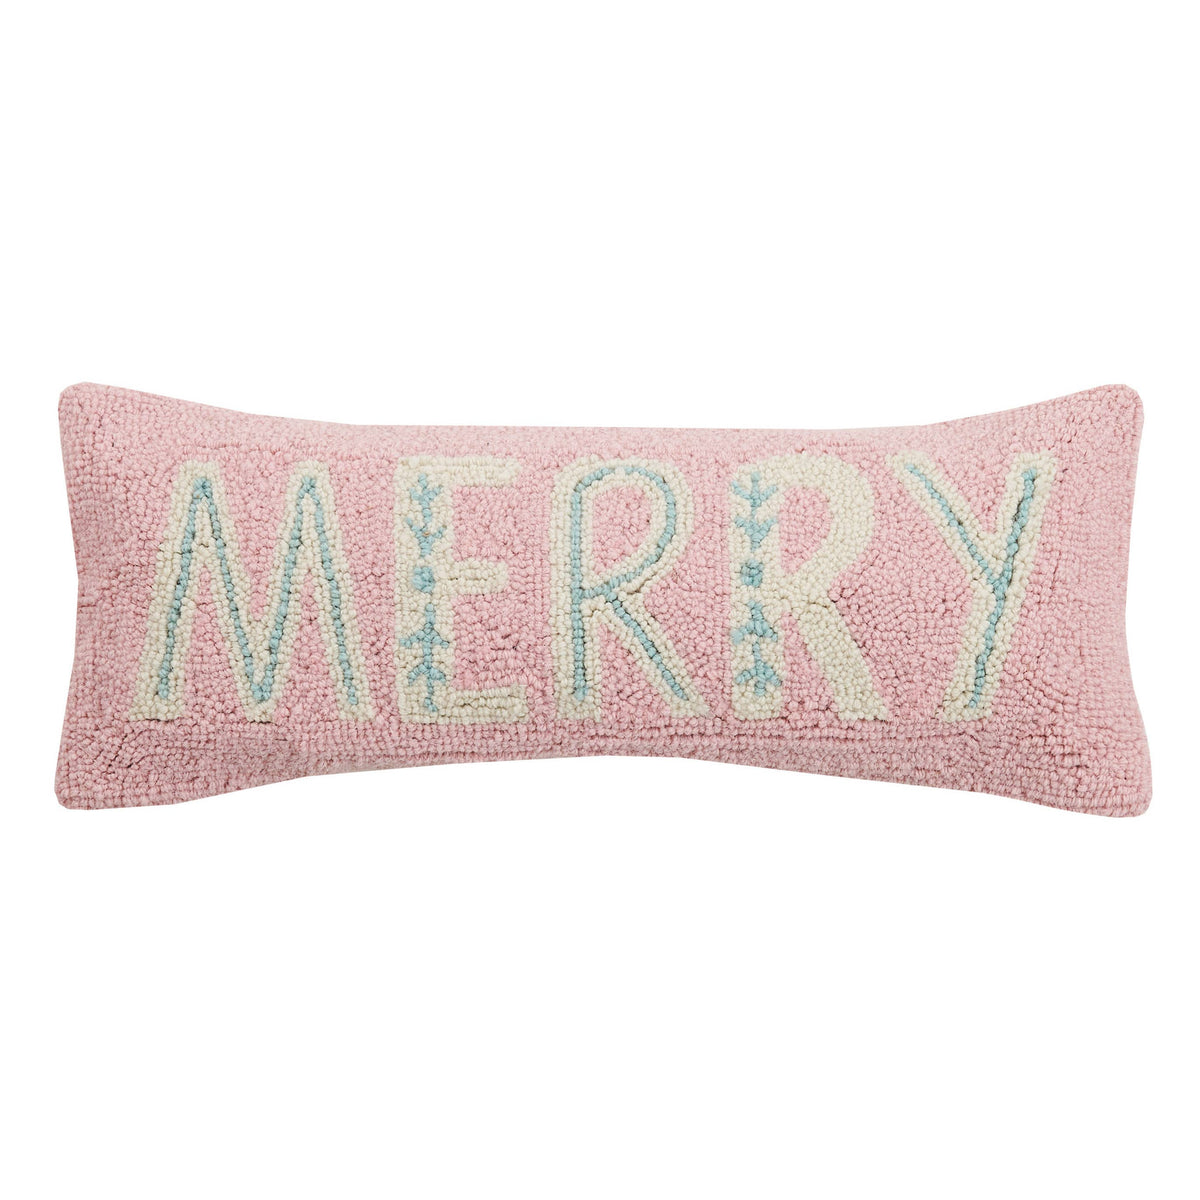 Pillow -Merry Hook Pillow - Christmas